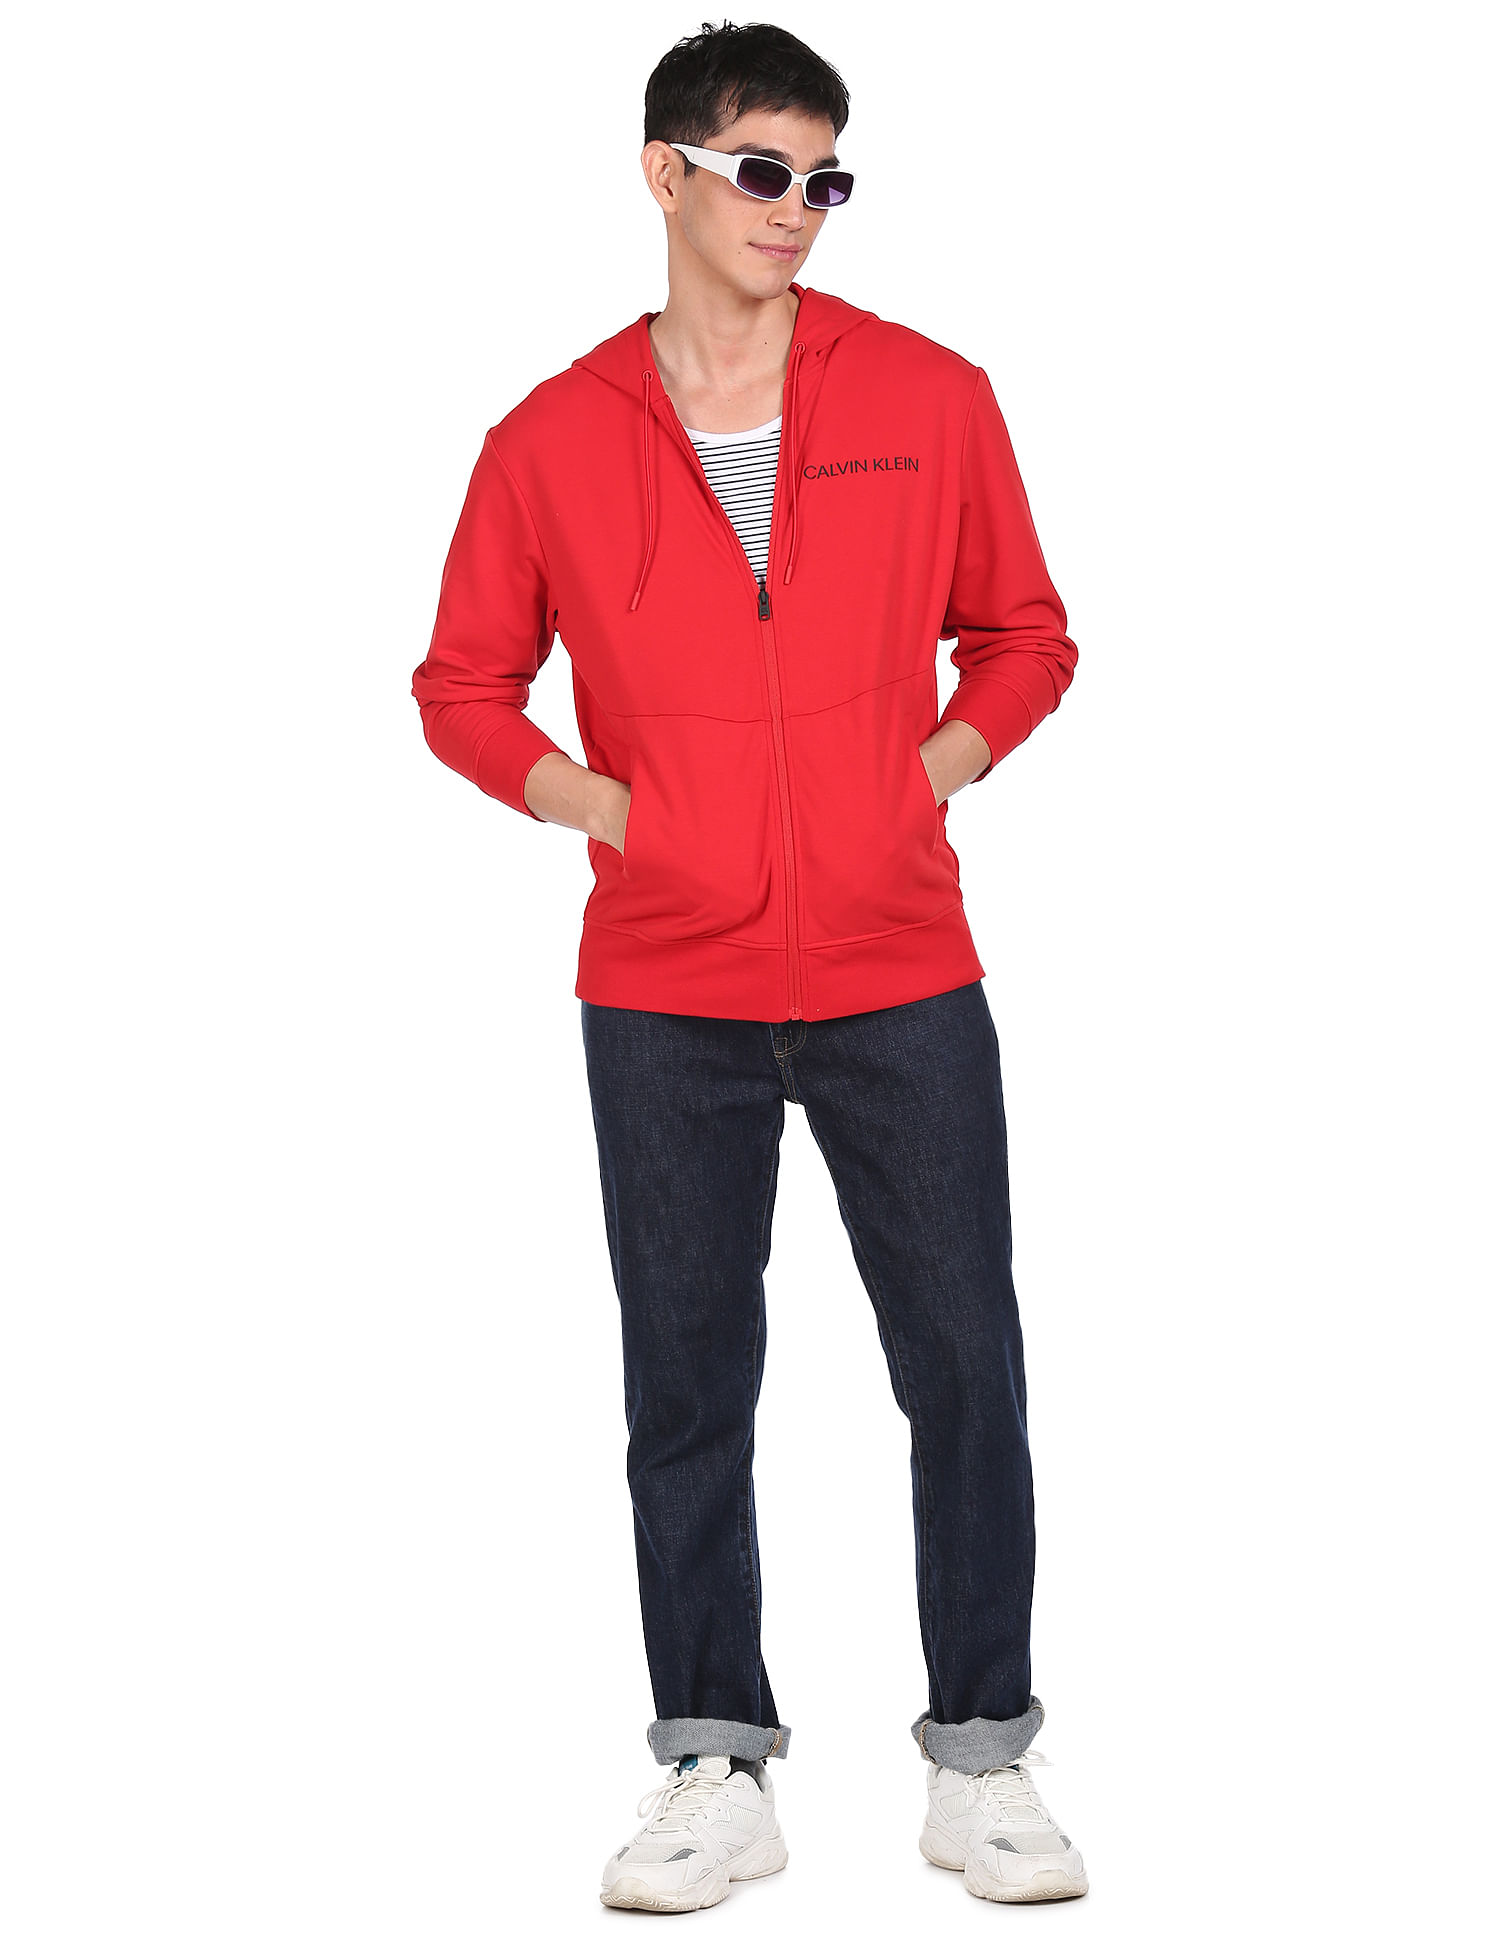 Calvin Klein Jeans Red Sweatshirt Pullover Men Size Medium